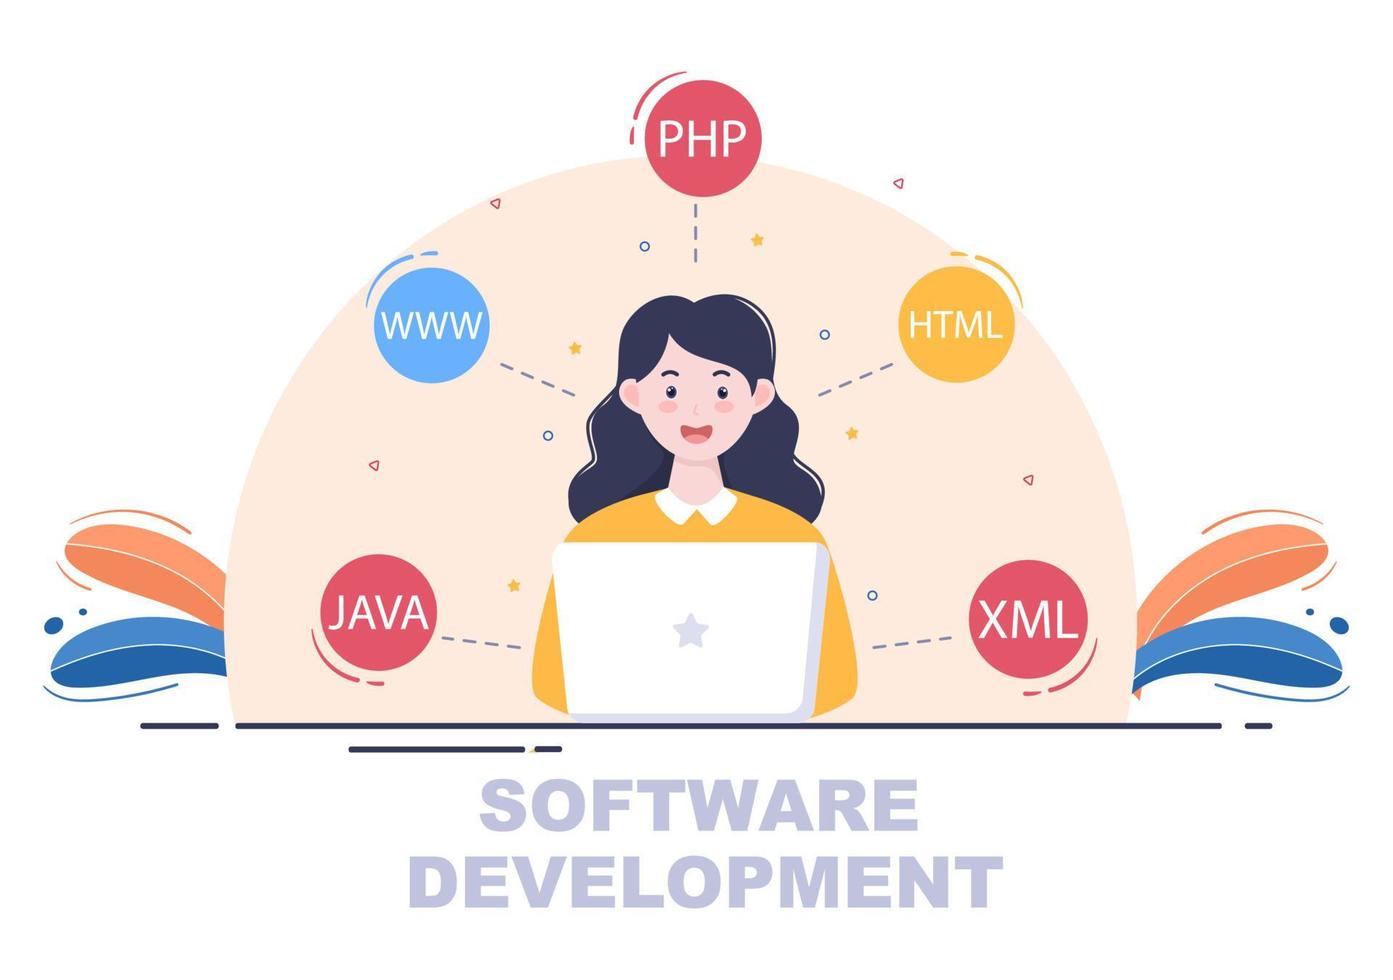 softwareontwikkeling en programmeercode op computervectorillustratie voor technologie, ingenieursteam, codering, marketingmateriaal, zaken en presentatie vector